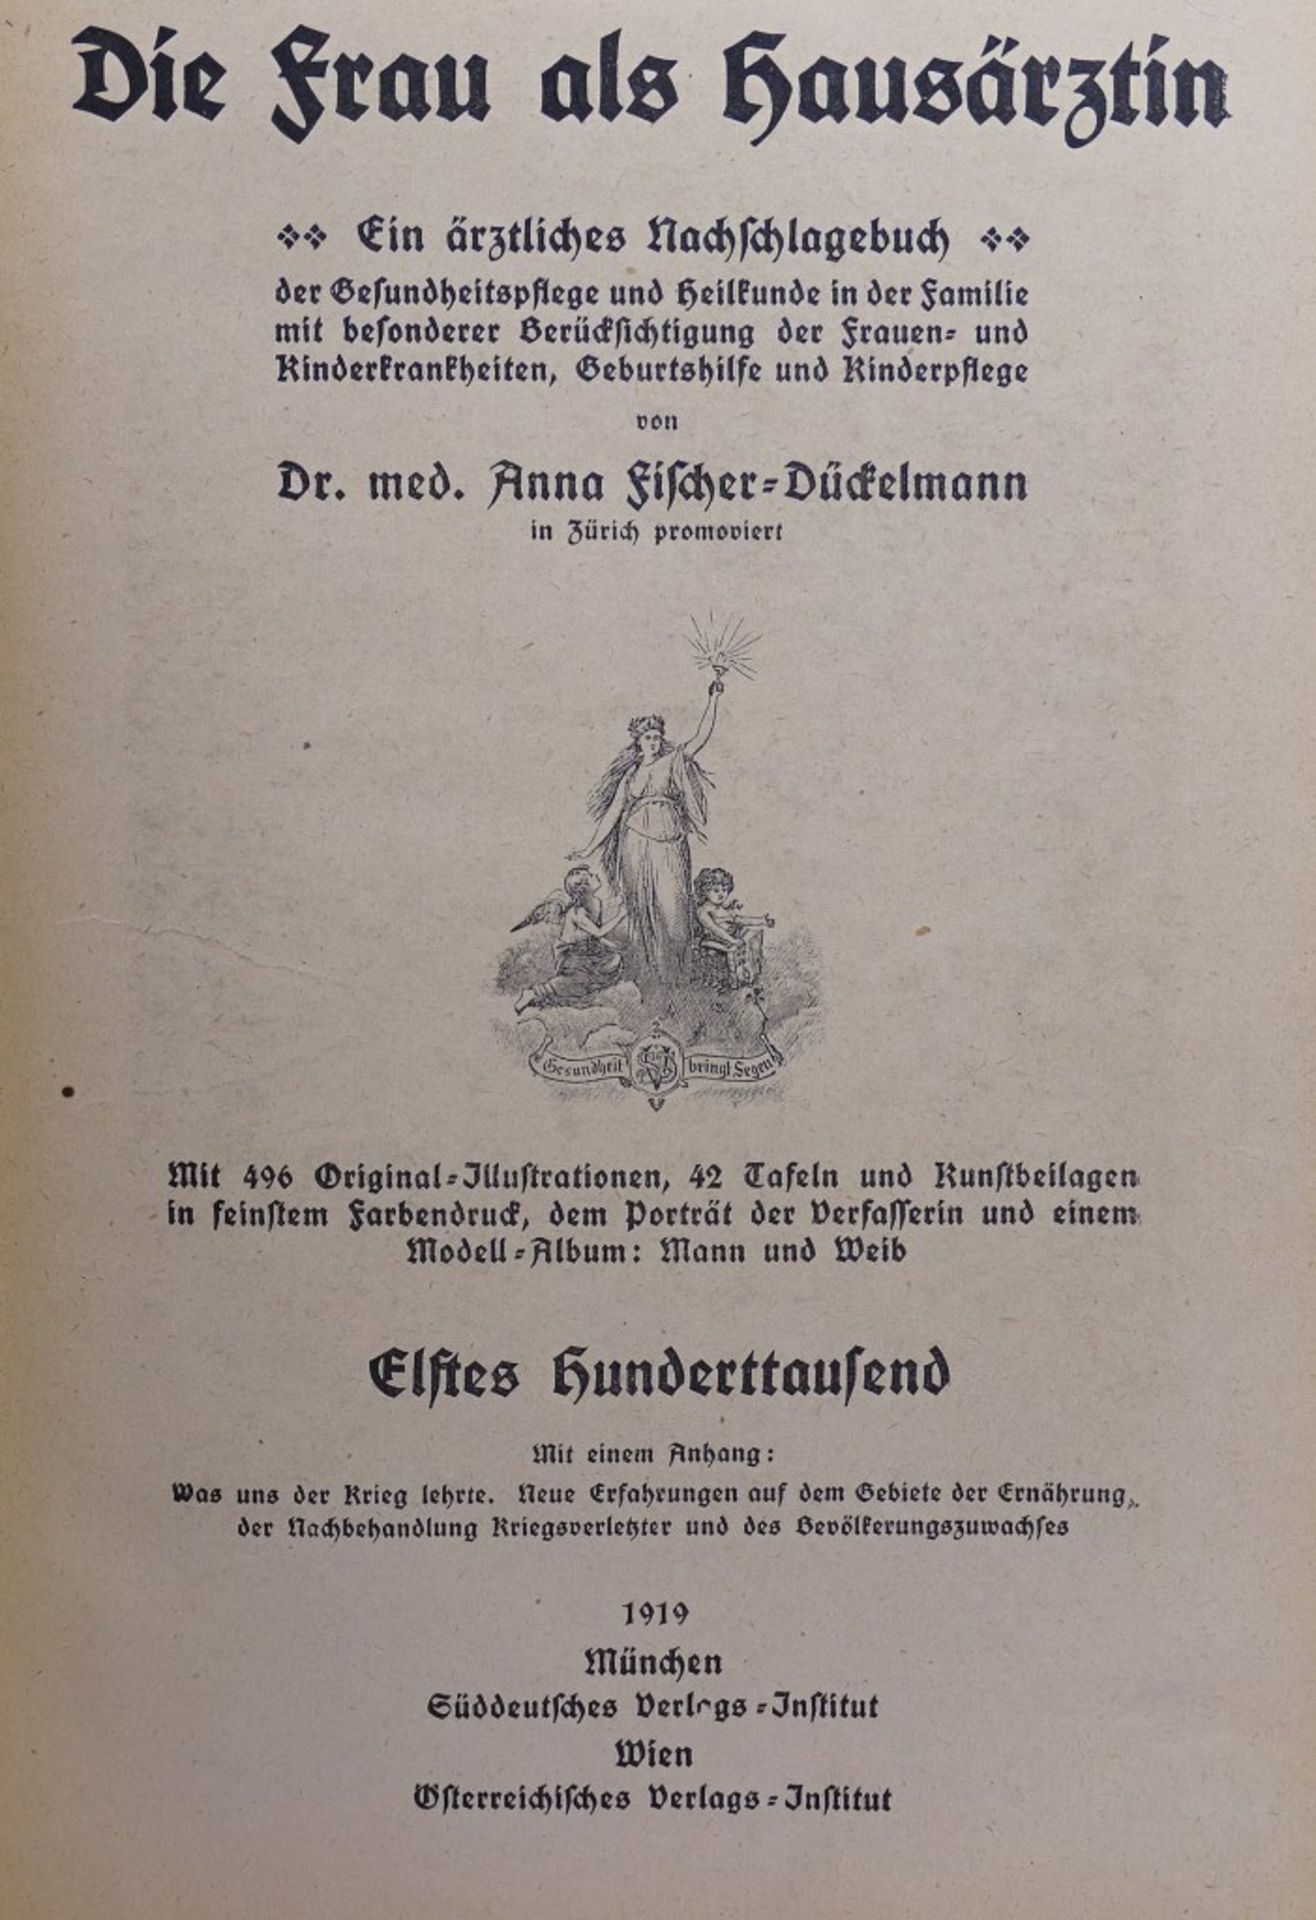 "Die Frau als Hausärztin",Das goldene Familienbuch,1919,Naschlagebuc - Bild 2 aus 9